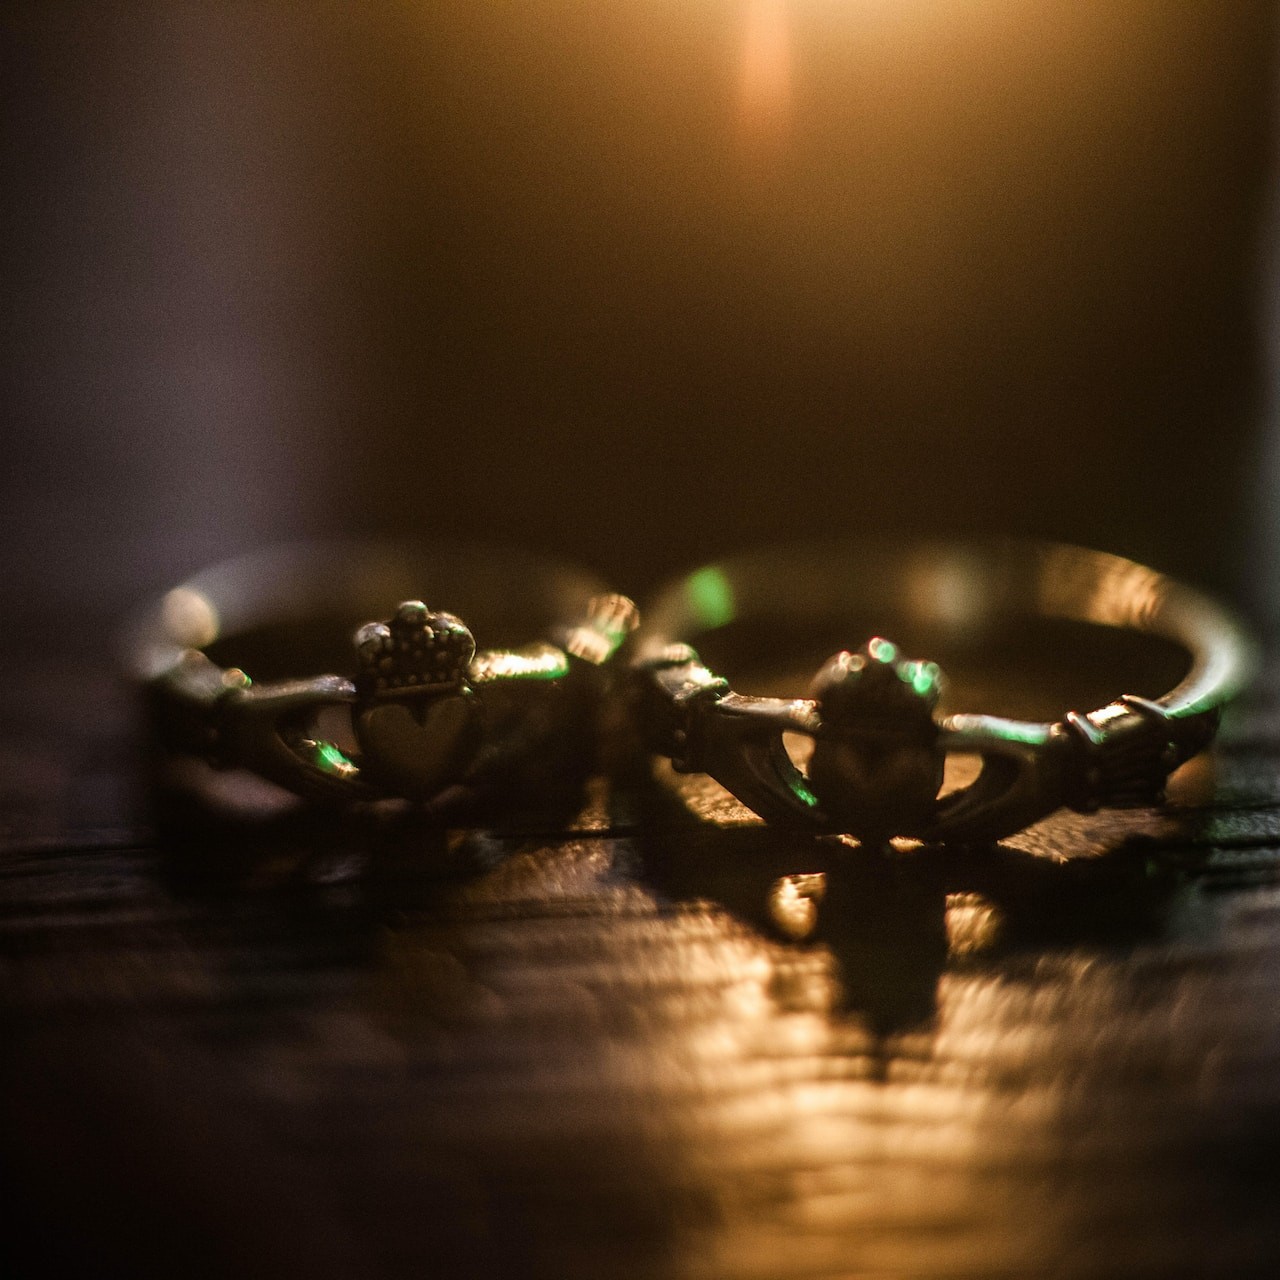 San Valentín e Irlanda: el anillo Claddagh como símbolo de amor y amistad